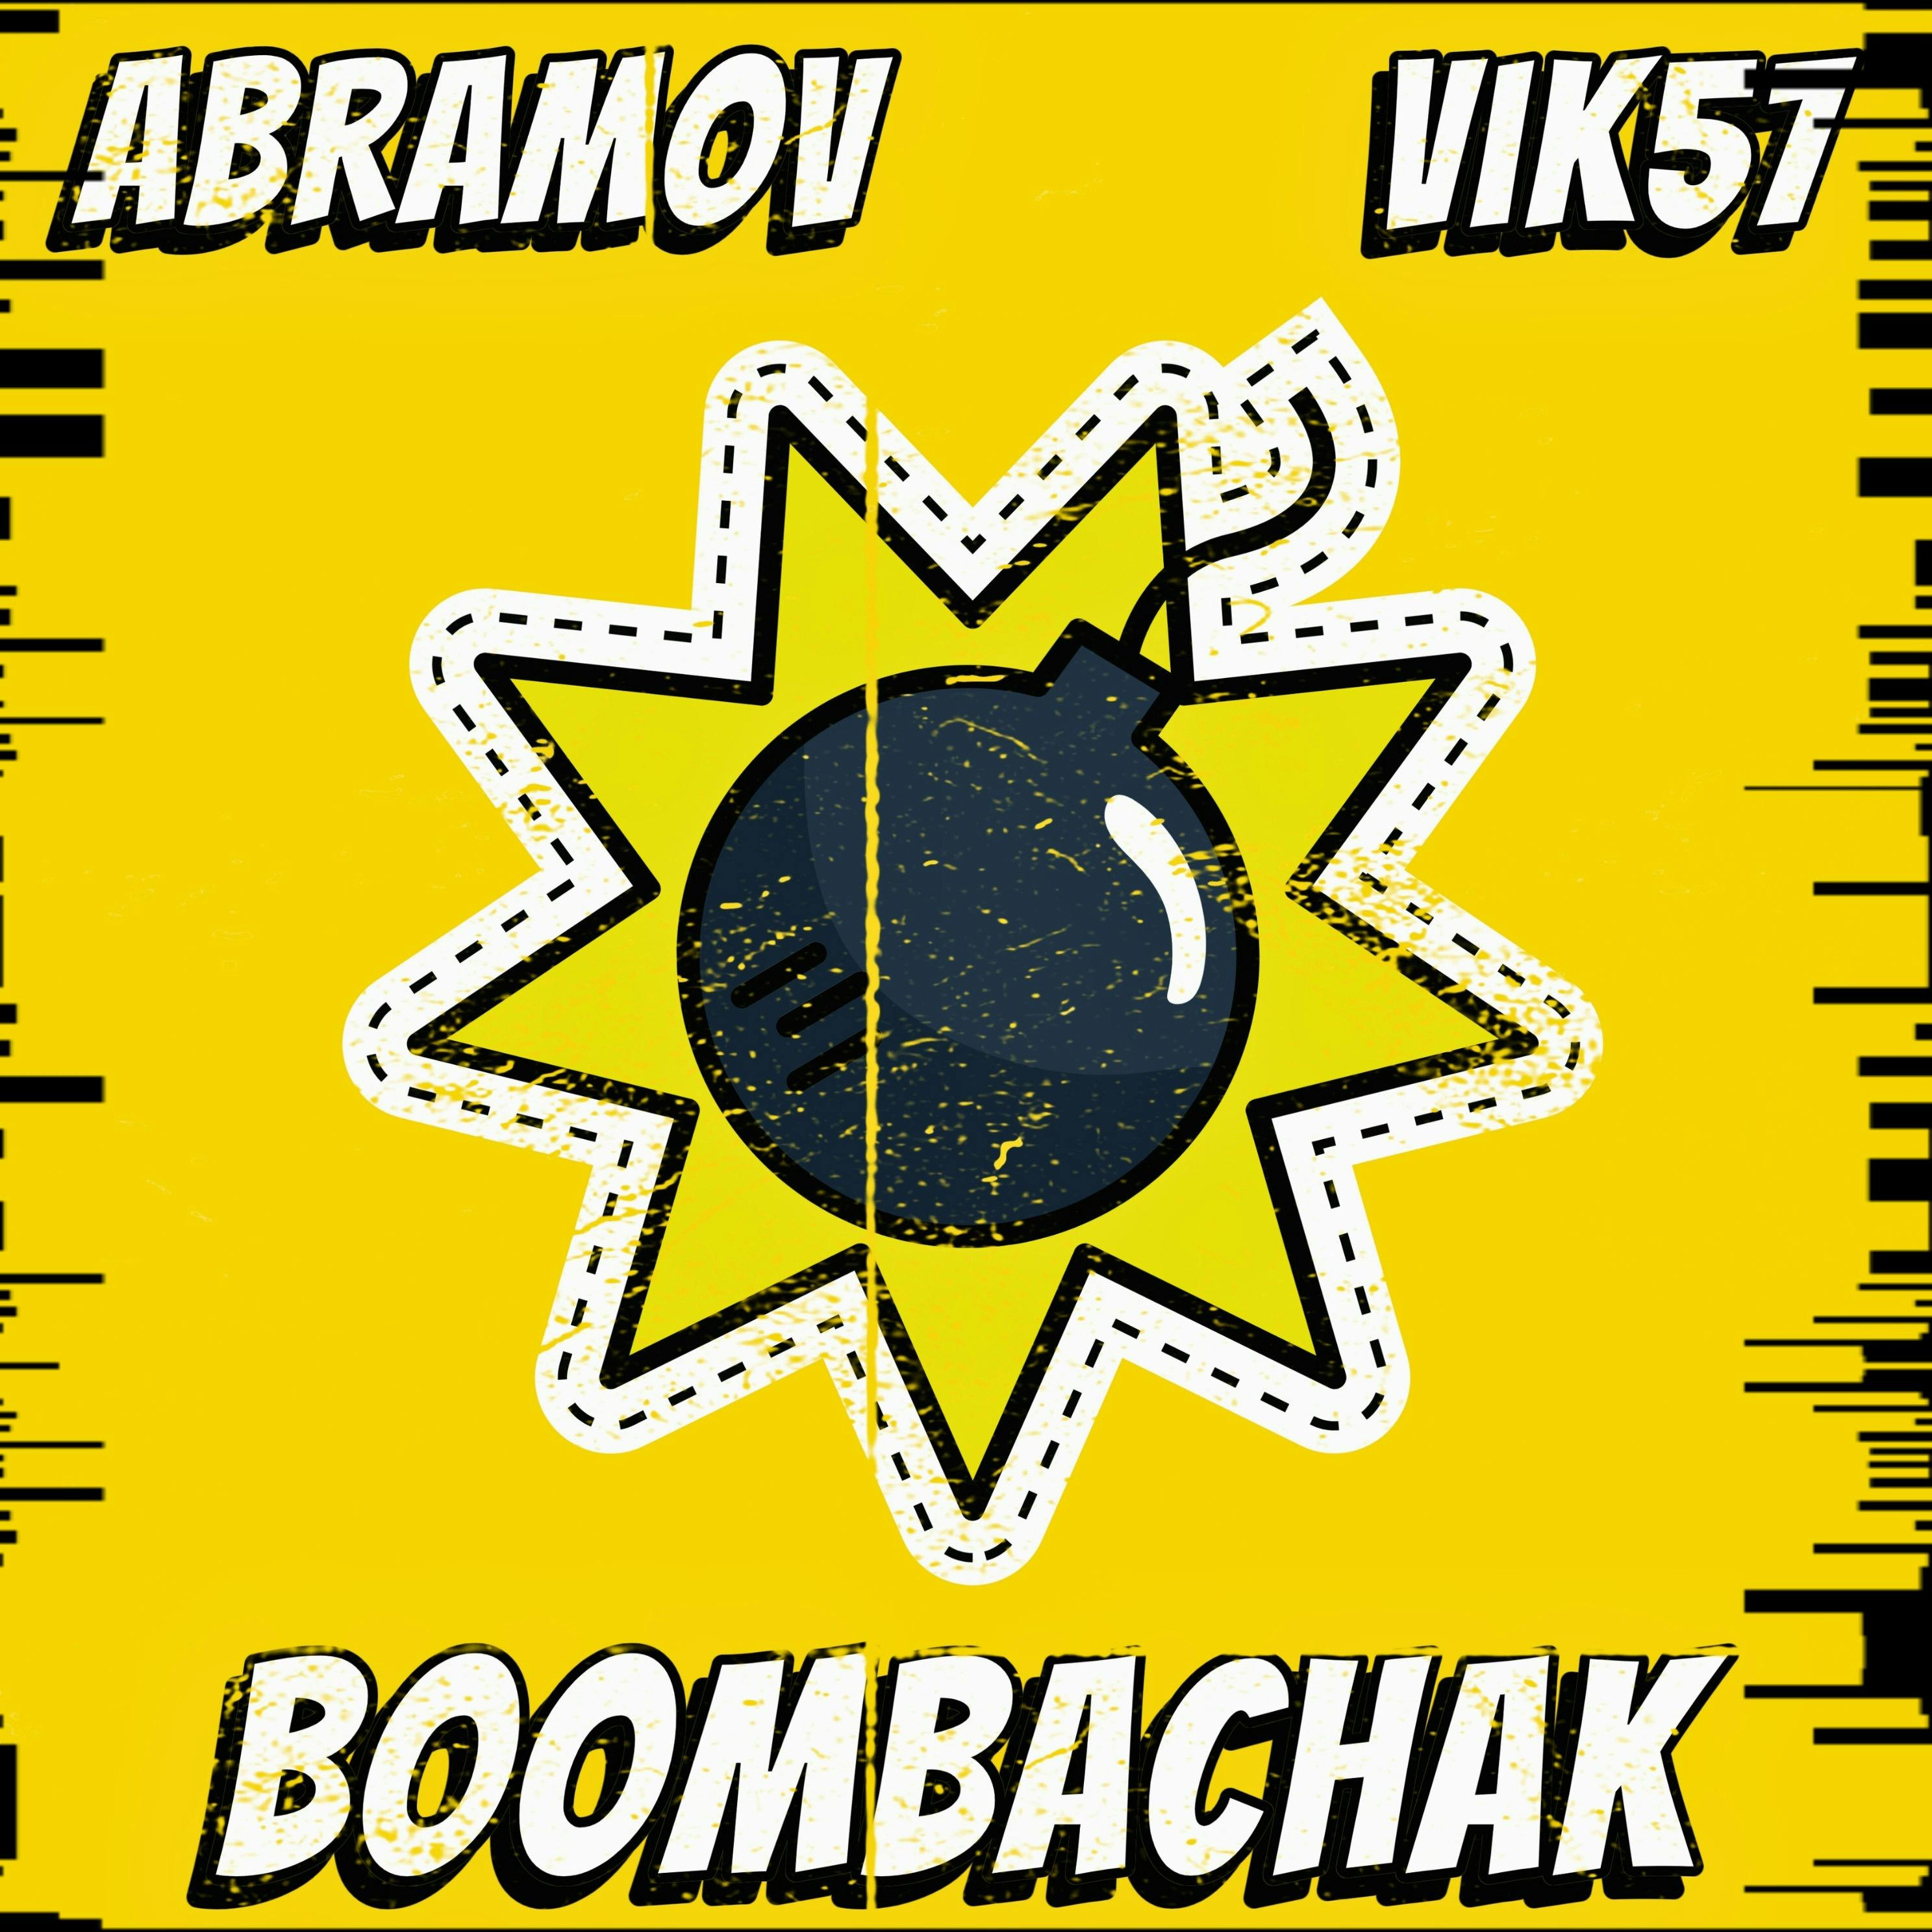 Boombachak